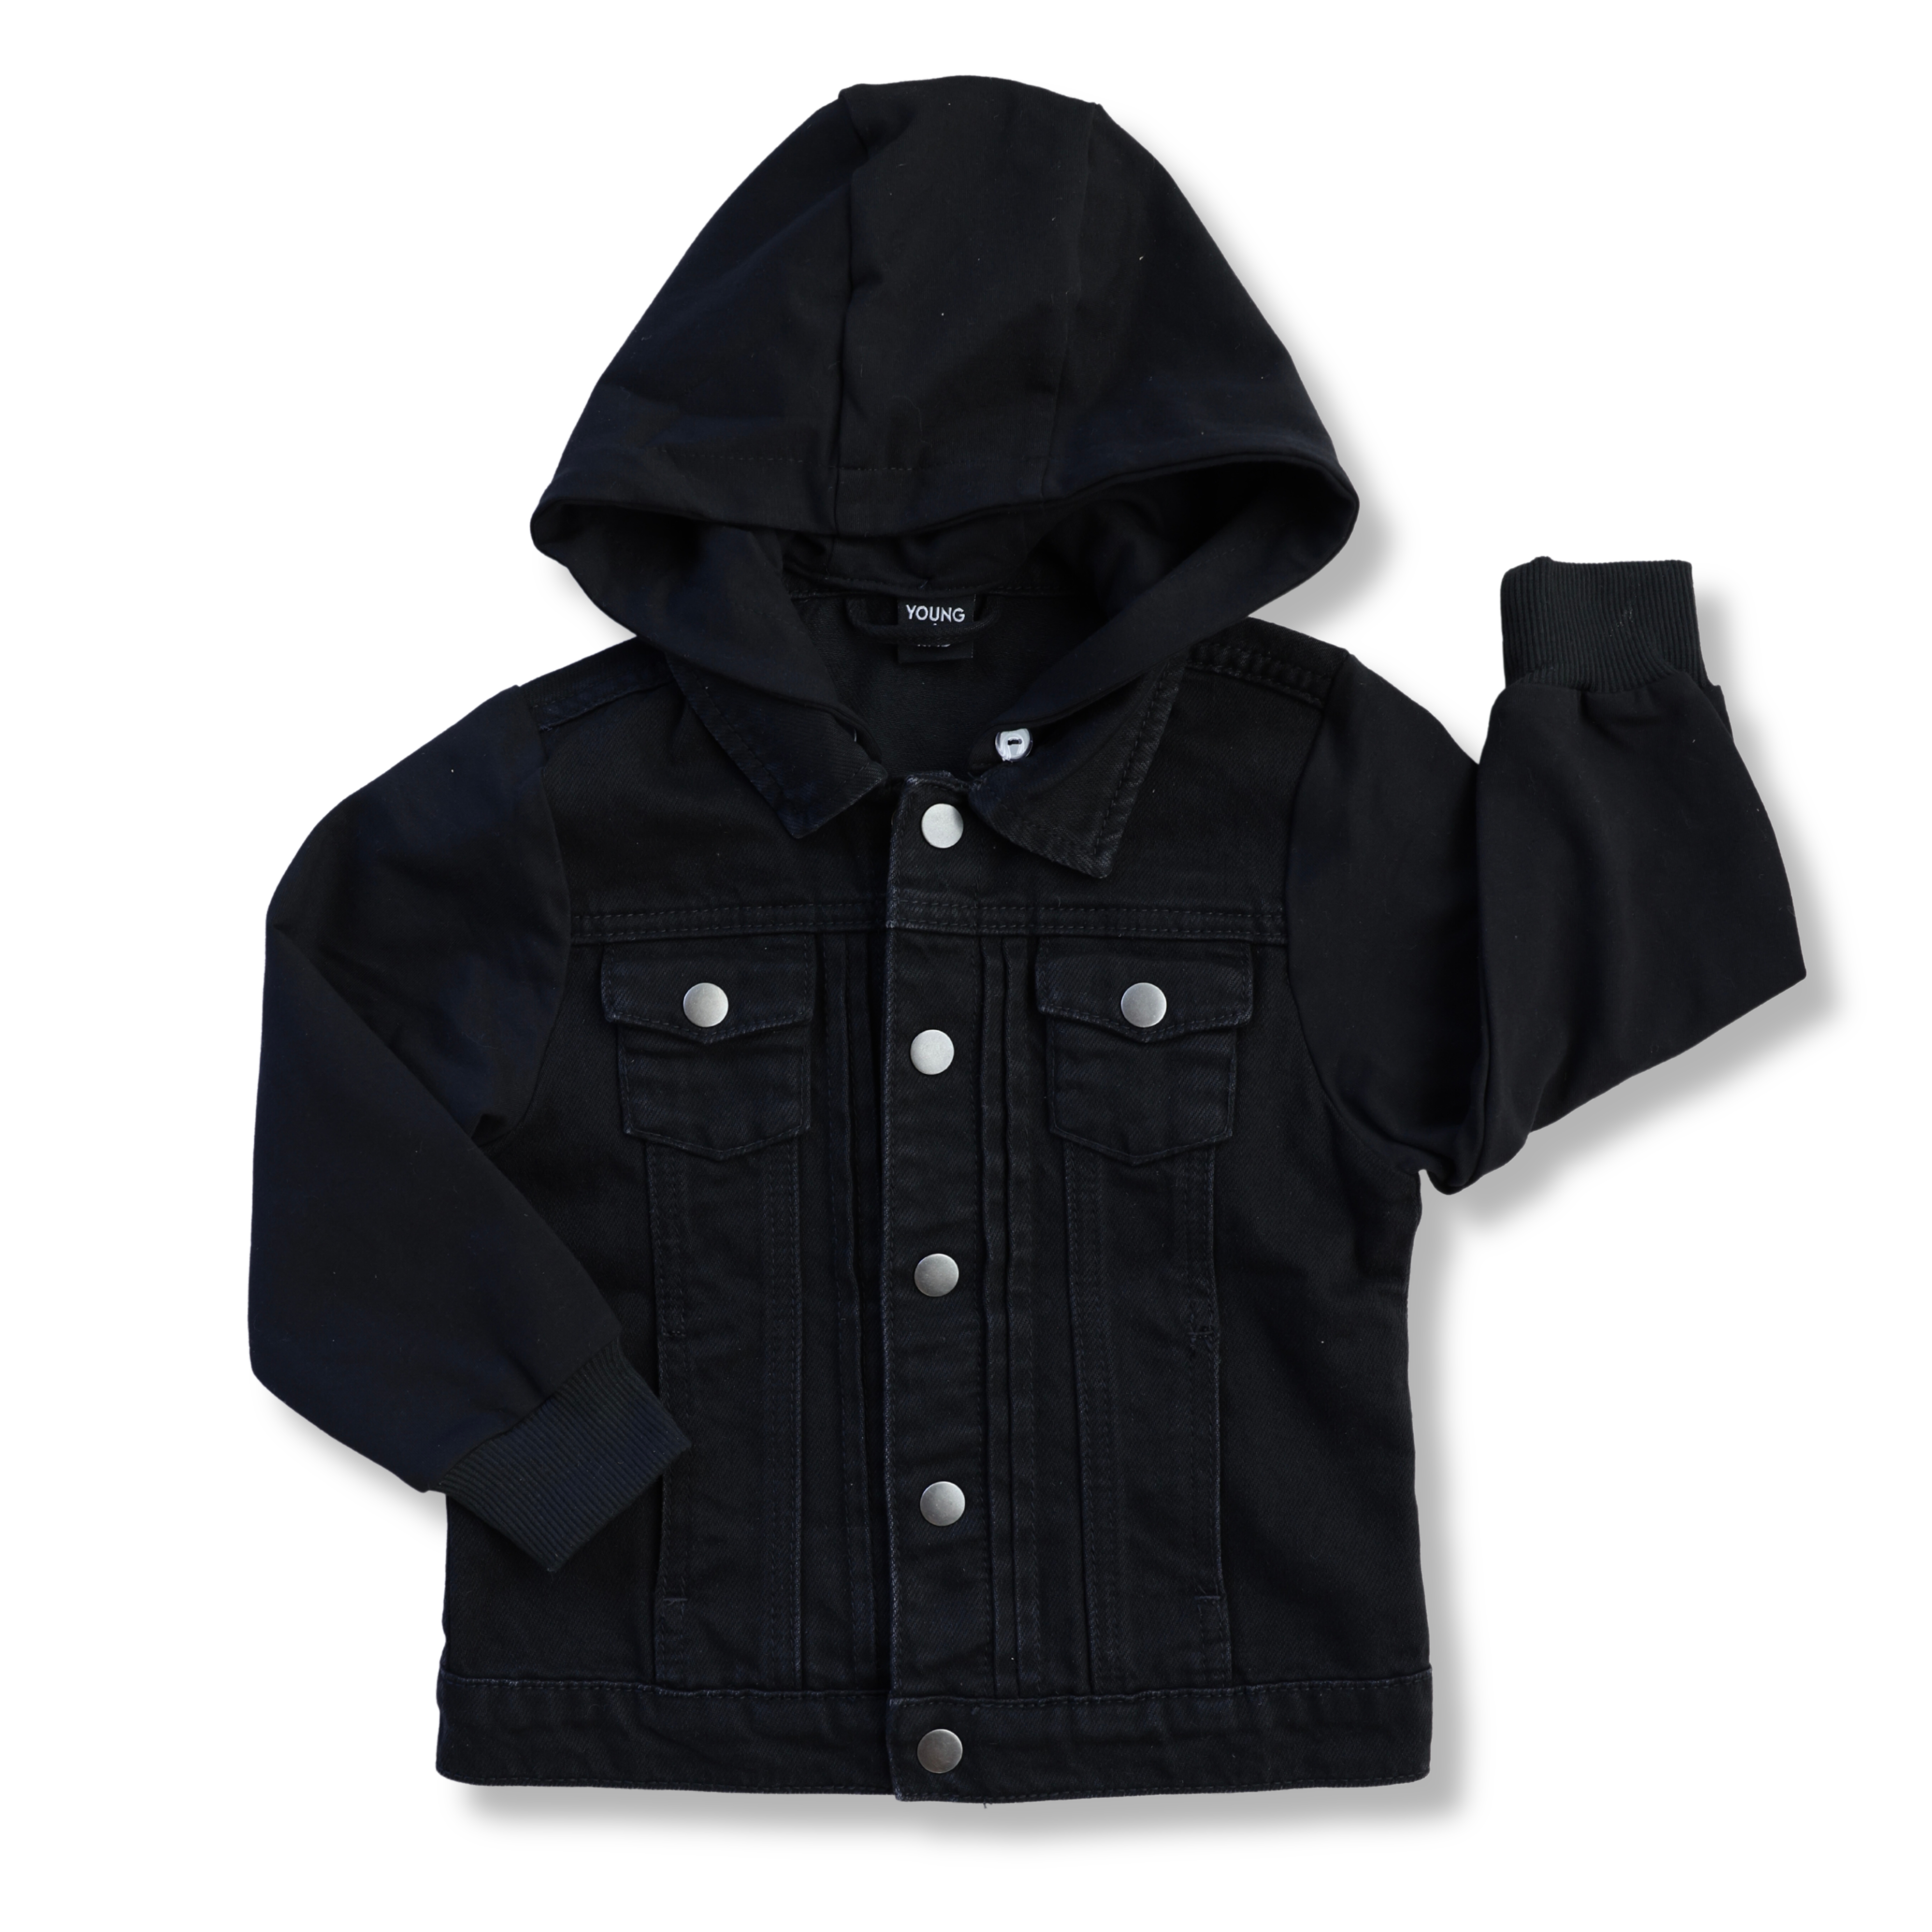 Black Hooded Jacket (Size Up 1-2 sizes)